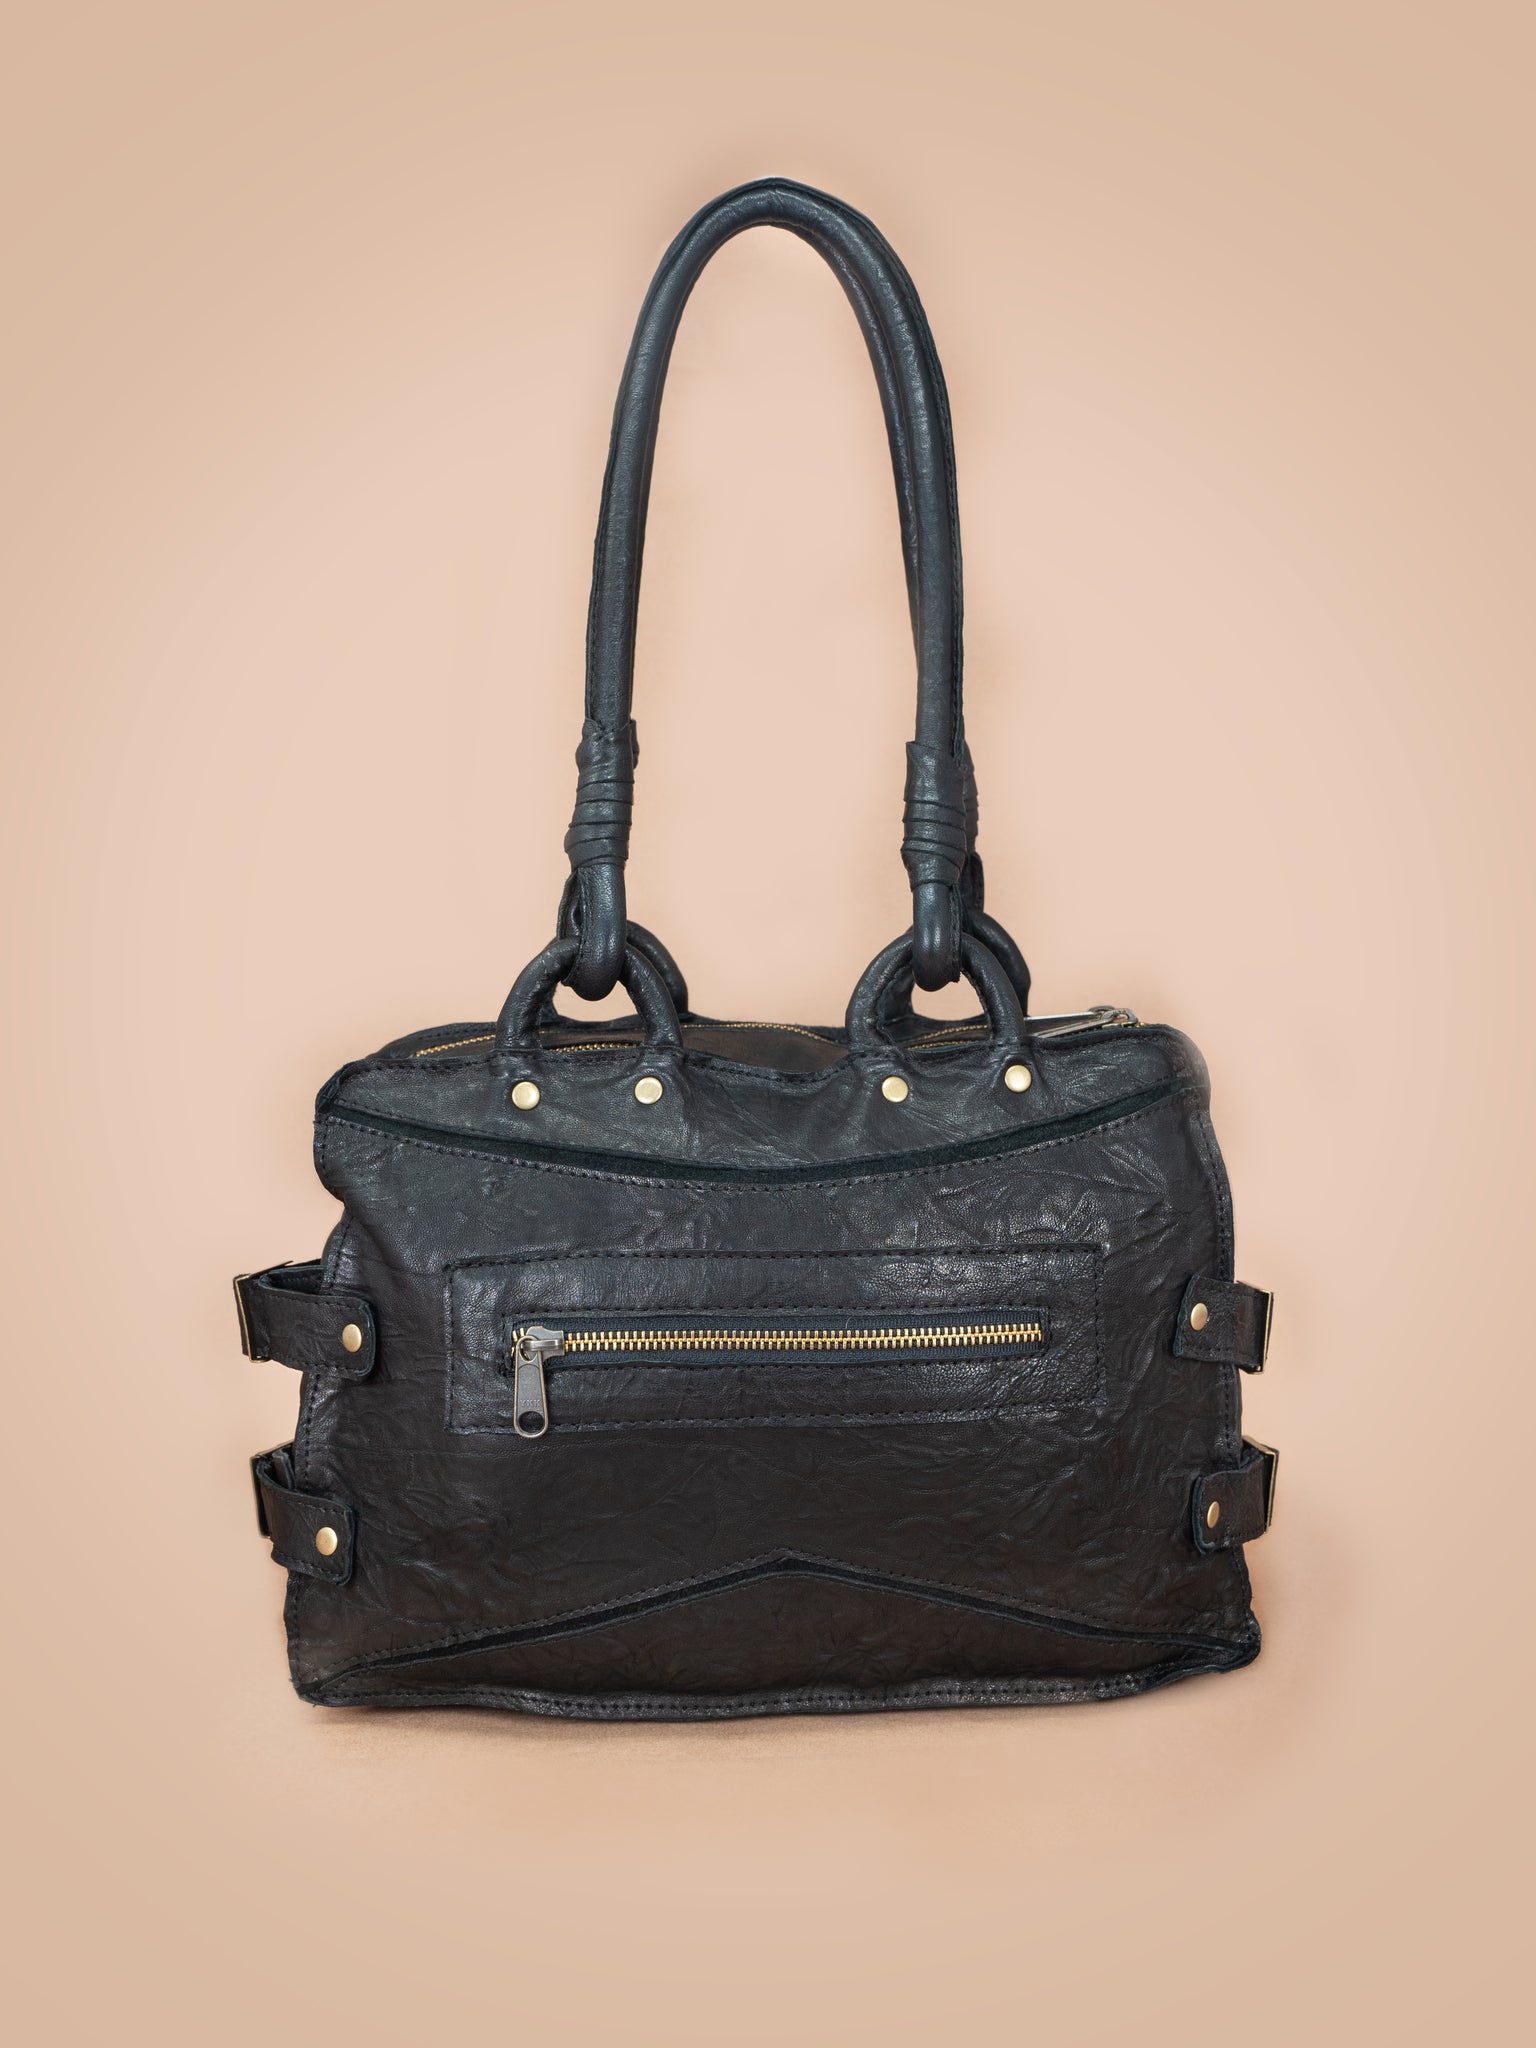 Prosperity Flowers Bloom Embroidered Genuine Leather Shoulder Bag | Genuine  leather handbag, Handbag, Genuine leather